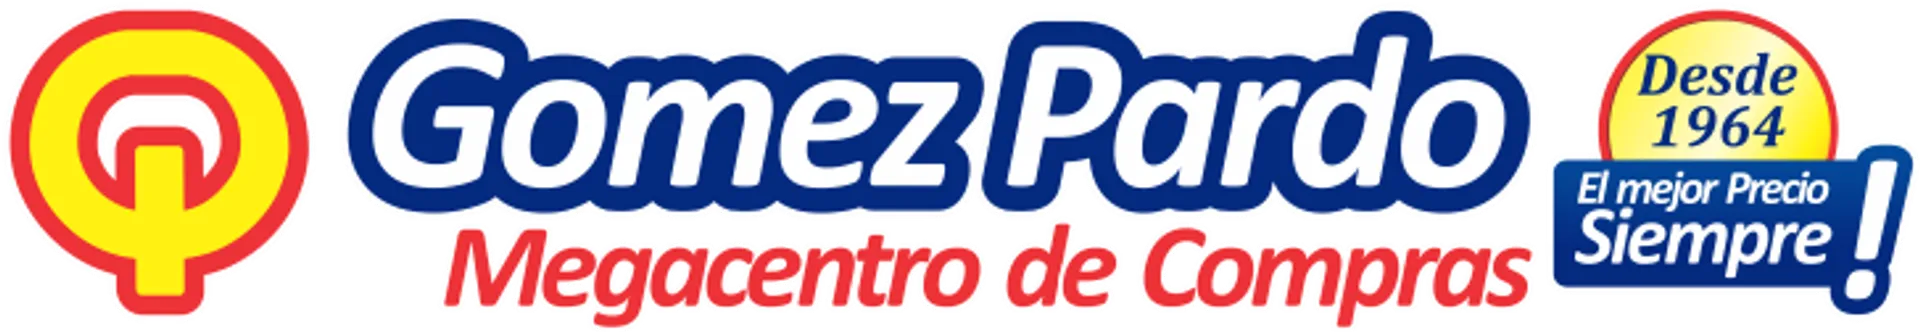 GOMEZ PARDO logo